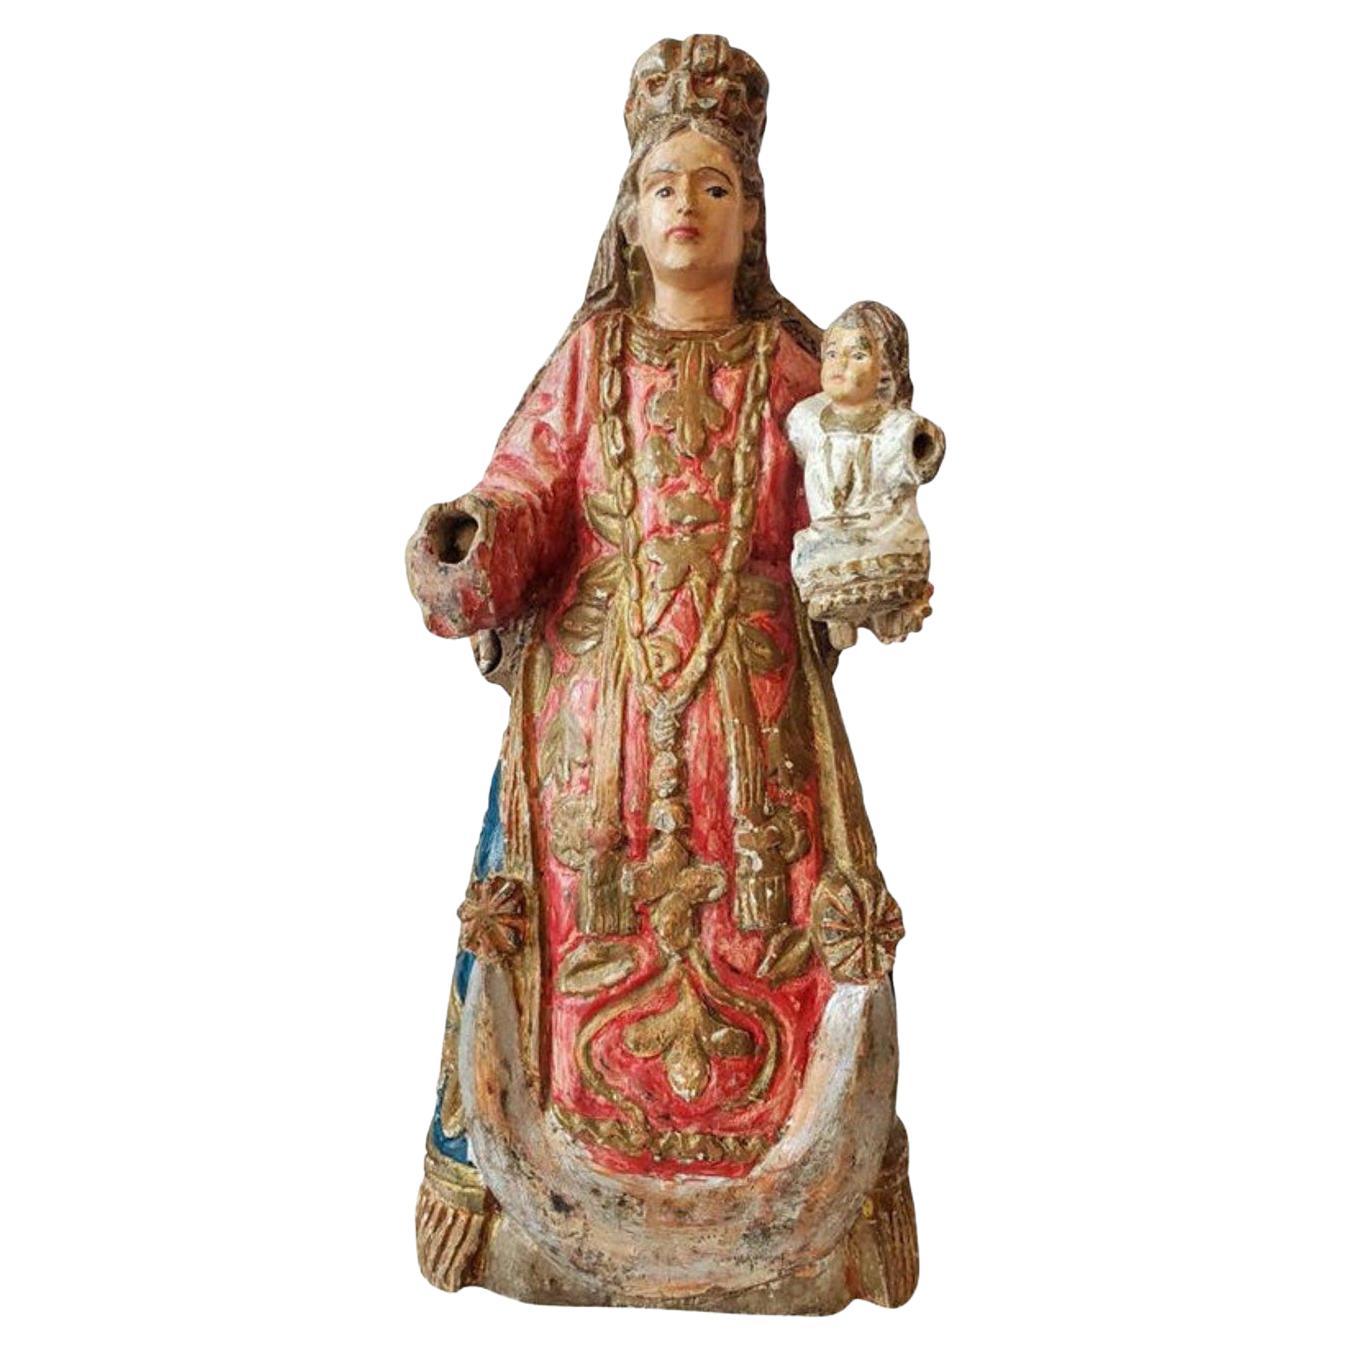 Ancienne figure d'autel religieux saint colonial espagnol